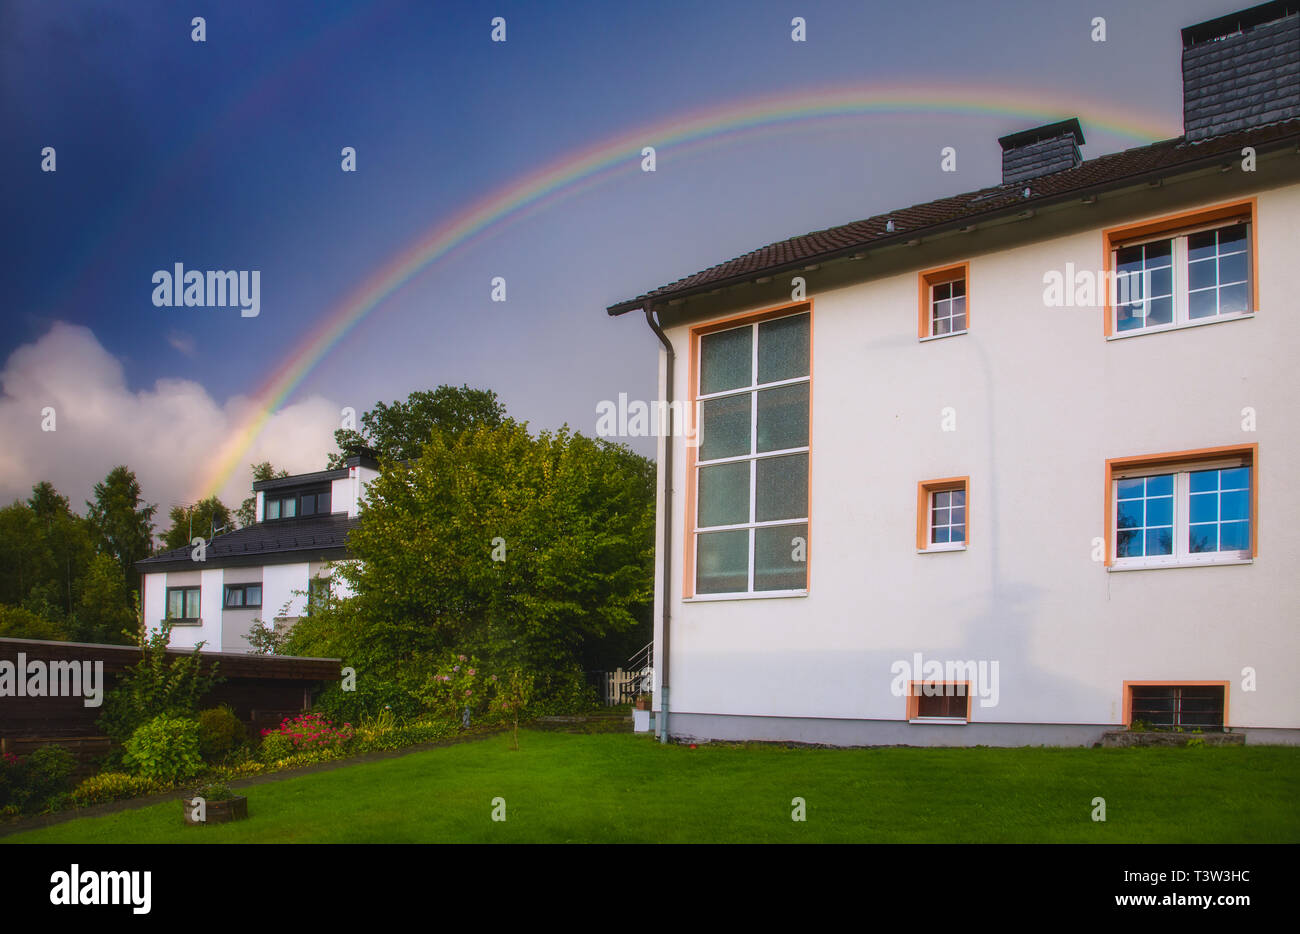 Rainbow over a house Stock Photo